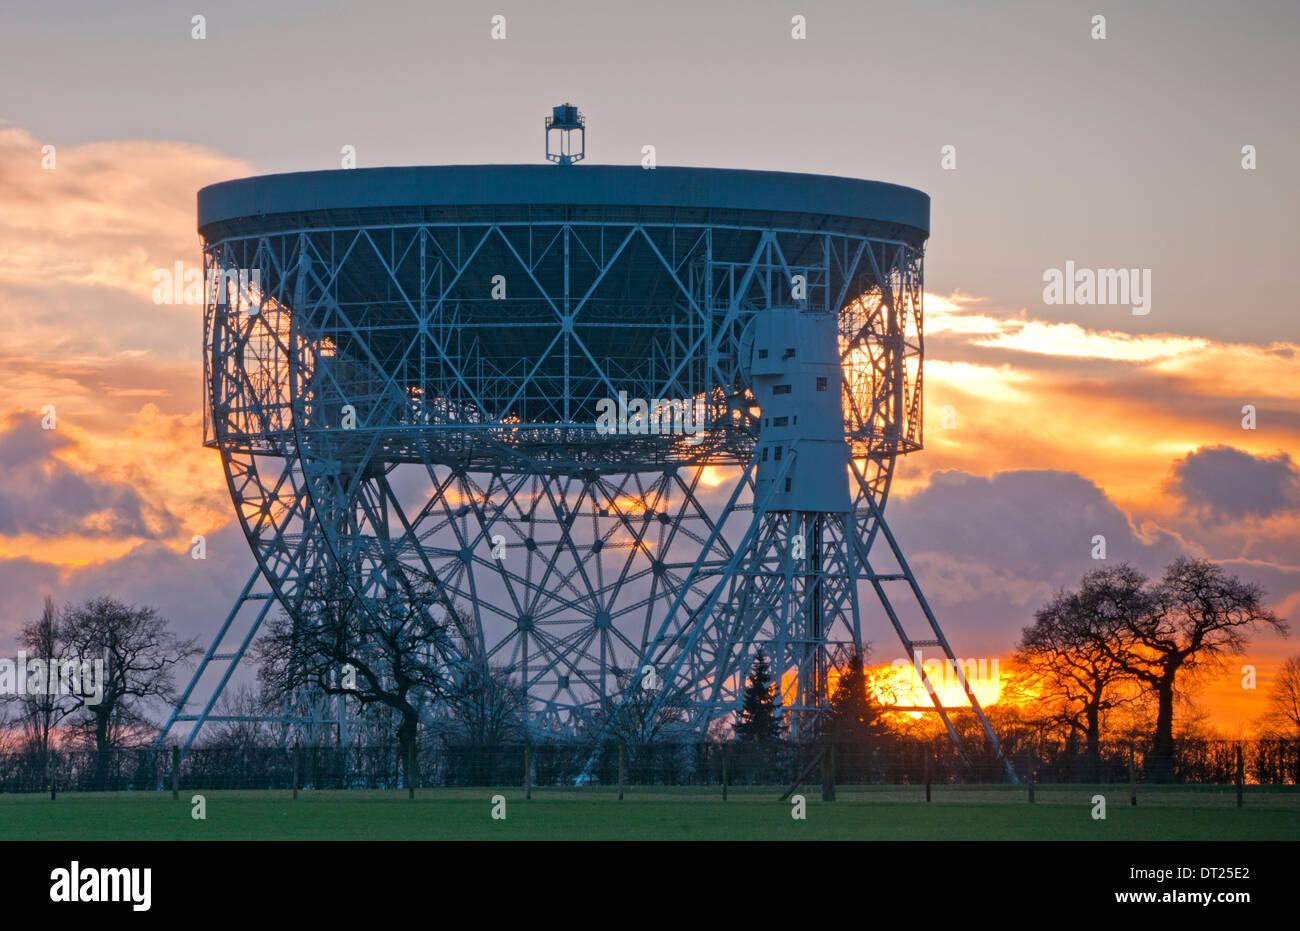 Le télescope de Jodrell Bank au coucher du soleil, près de Holmes Chapel, Cheshire, England, UK Banque D'Images